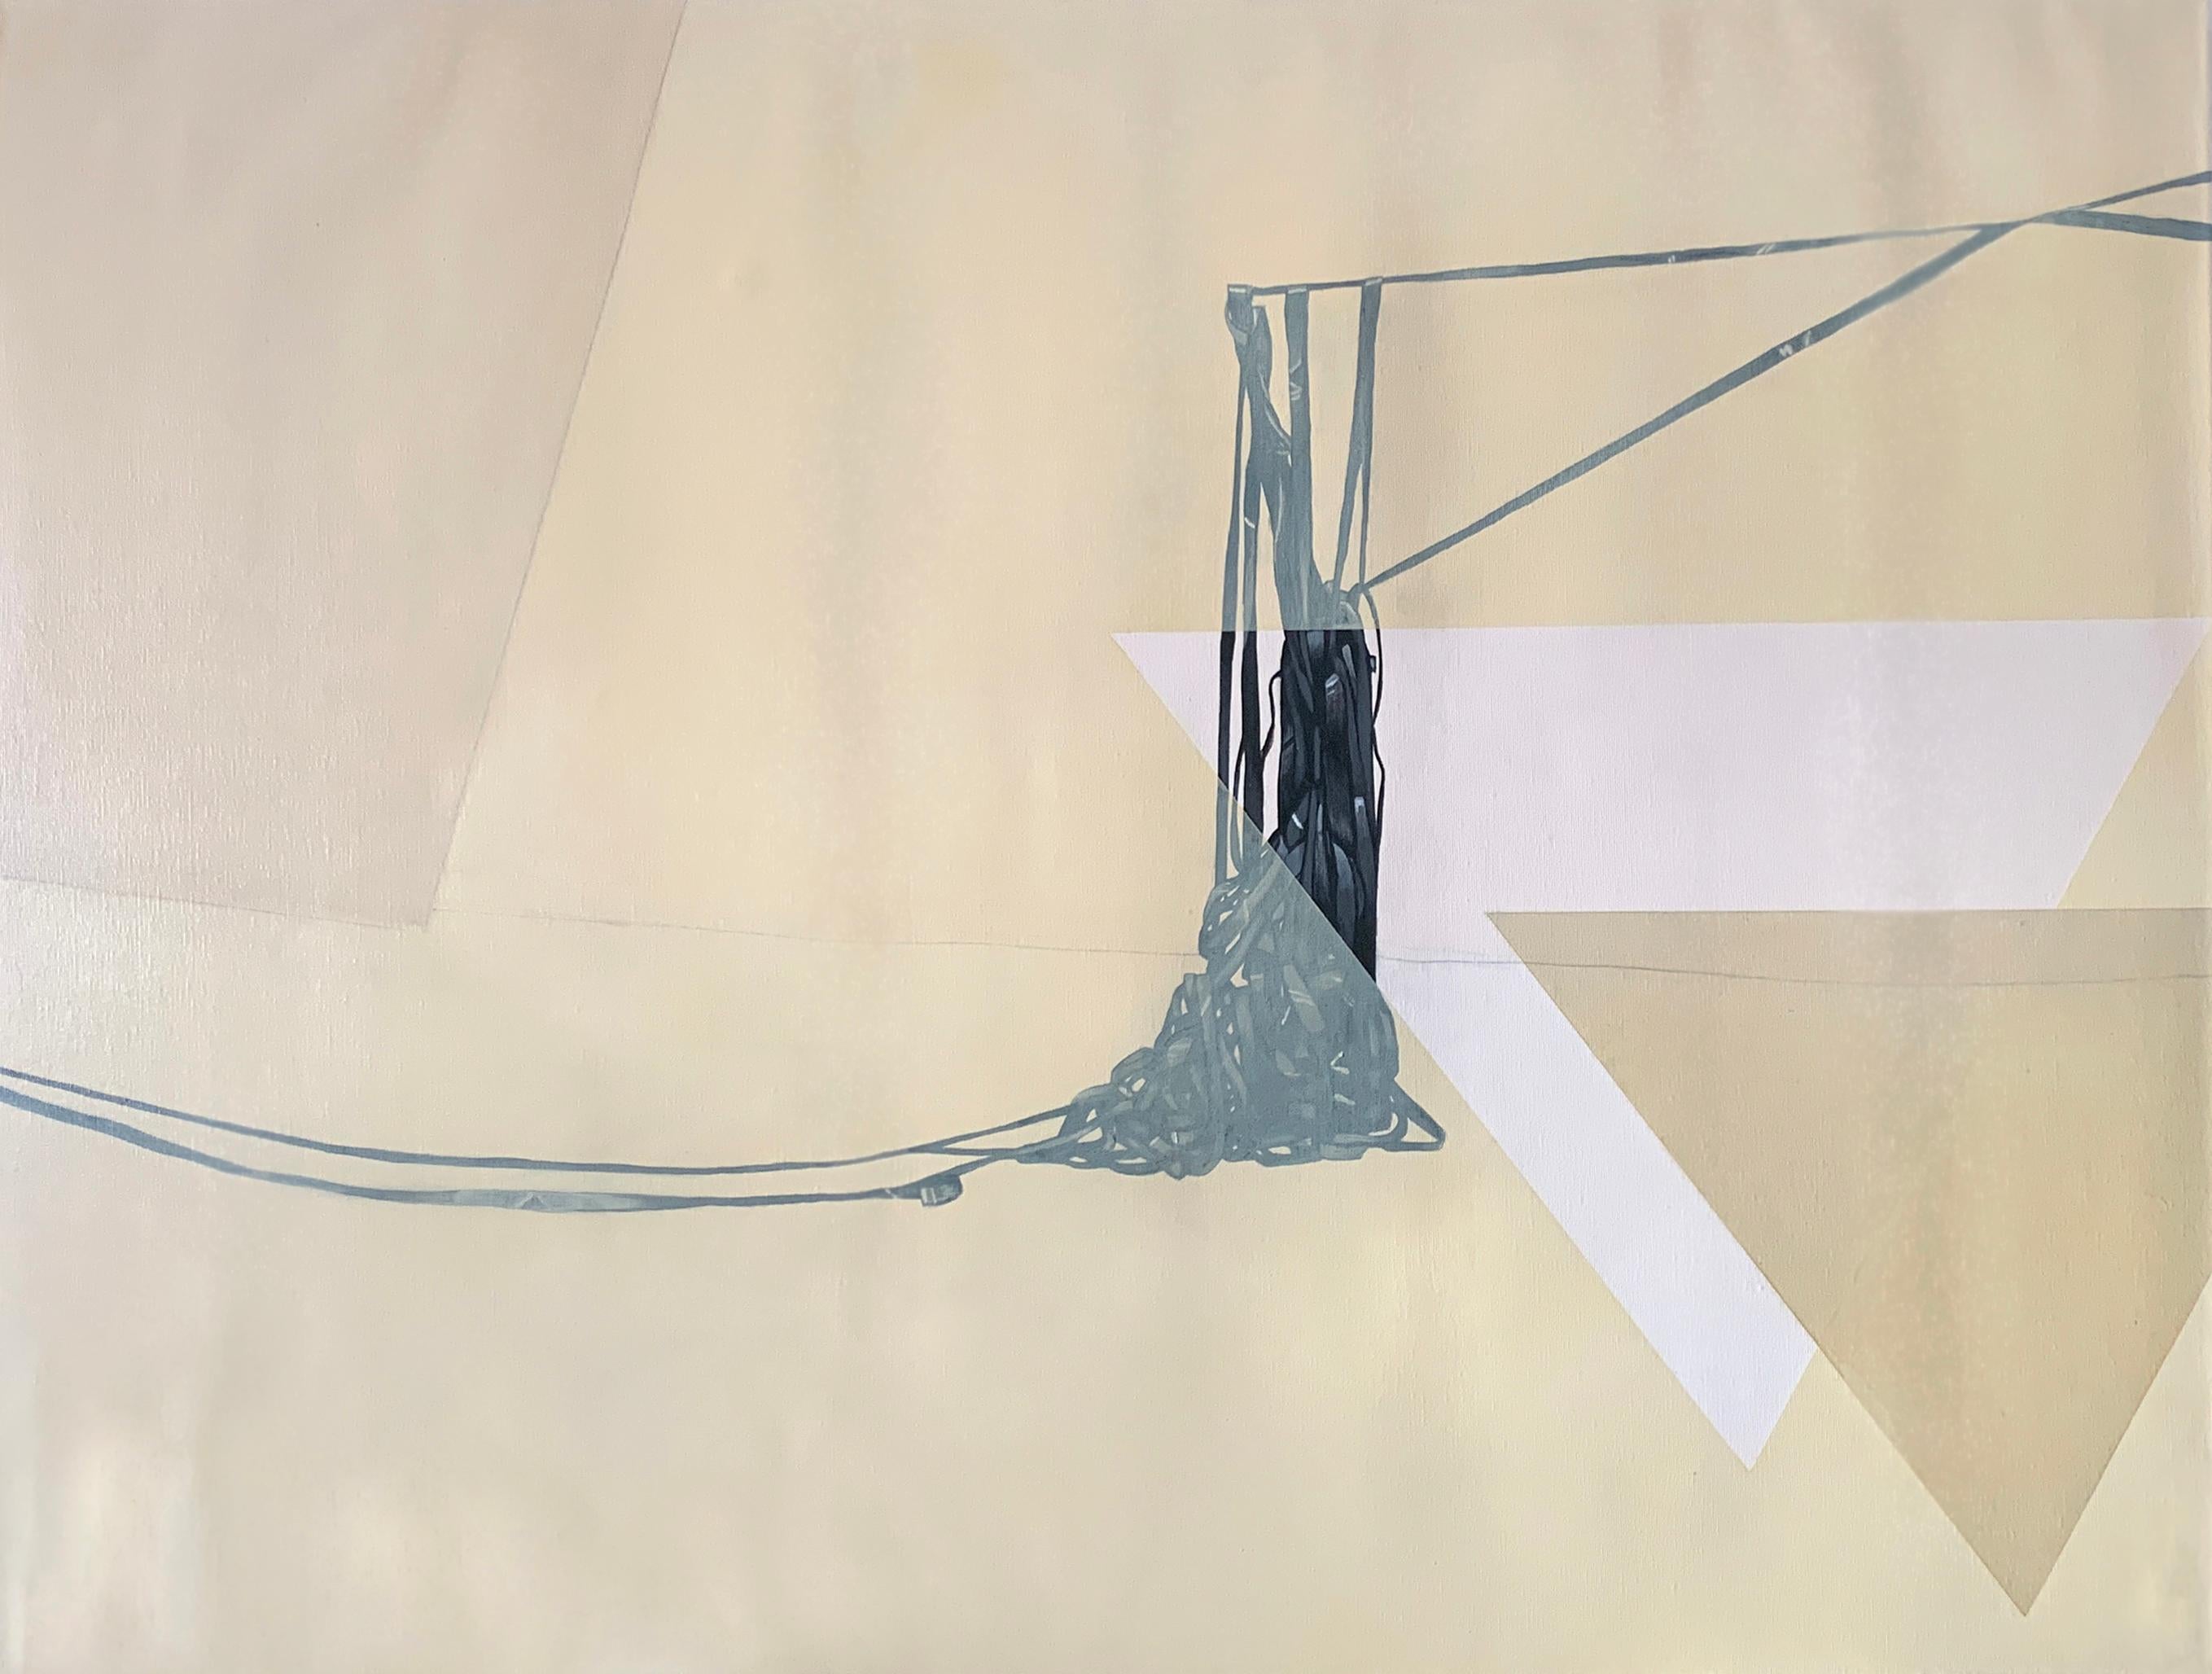 Abstract Painting Amanda Andersen - « Following II », peinture acrylique abstraite sur toile, lignes noires neutres, beige pâle